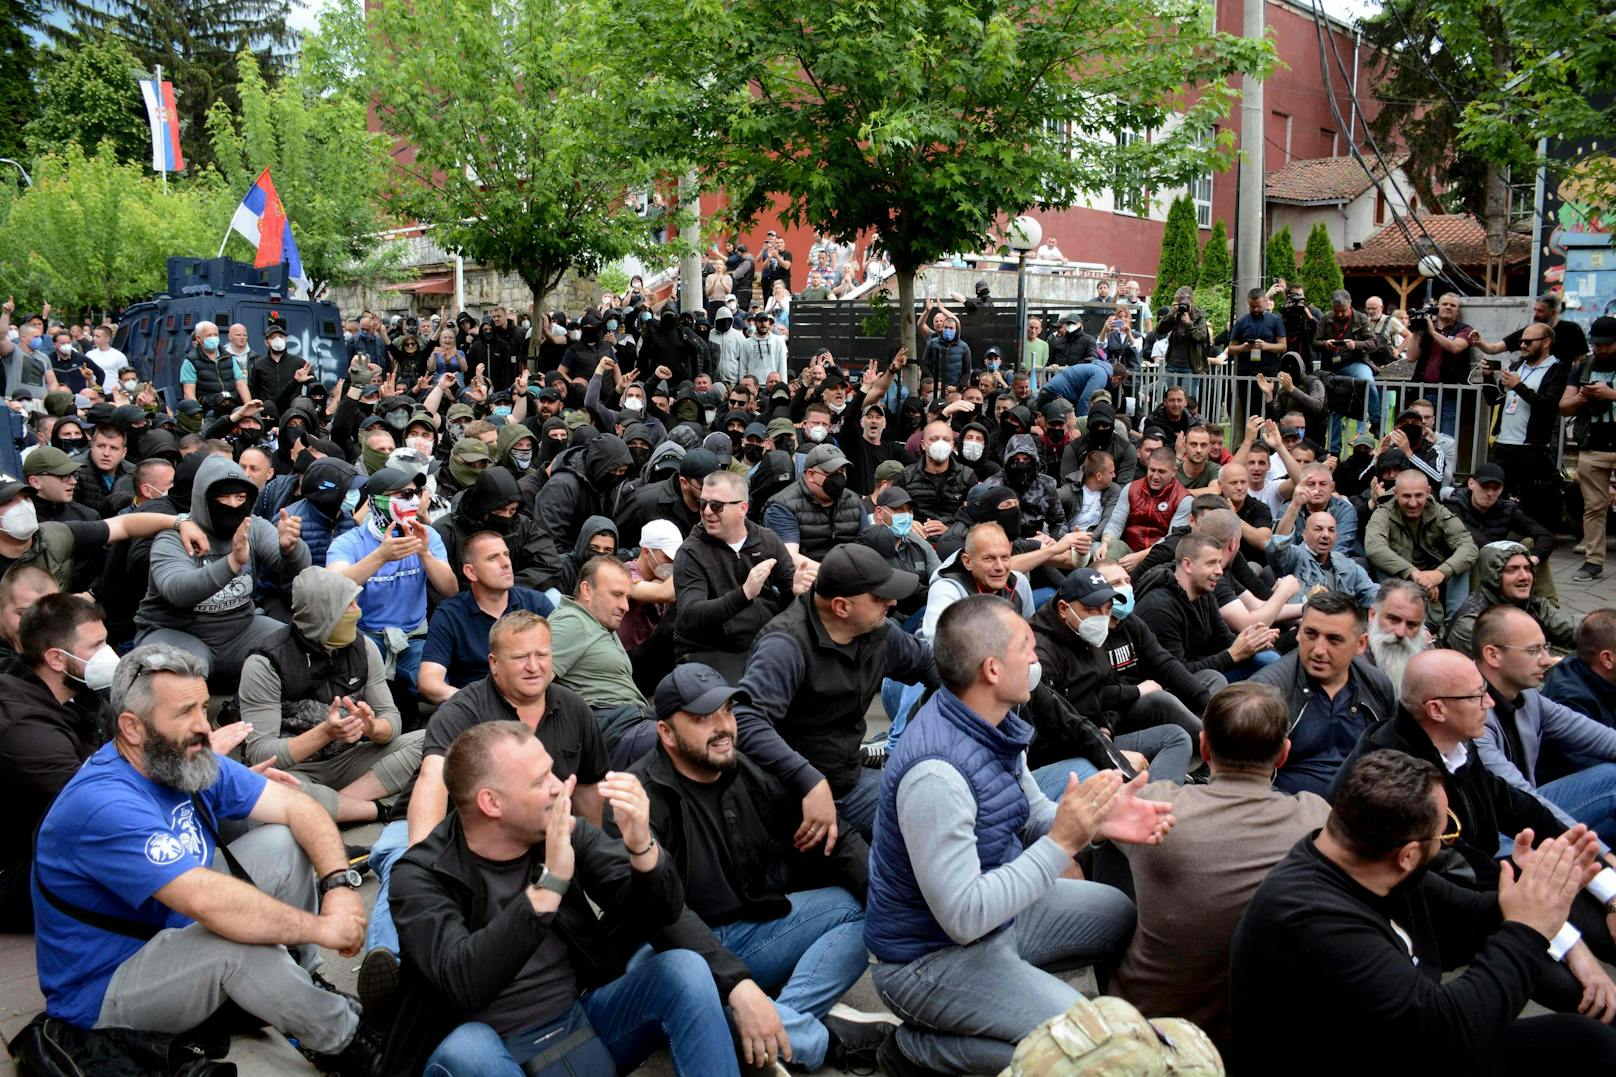 Im Norden des Kosovos ist es erneut zu einer gewaltsamen Konfrontation zwischen serbischen Demonstranten und der Polizei gekommen. Die Demonstranten versuchten, die Kontrolle über ein örtliches Regierungsgebäude zu übernehmen.